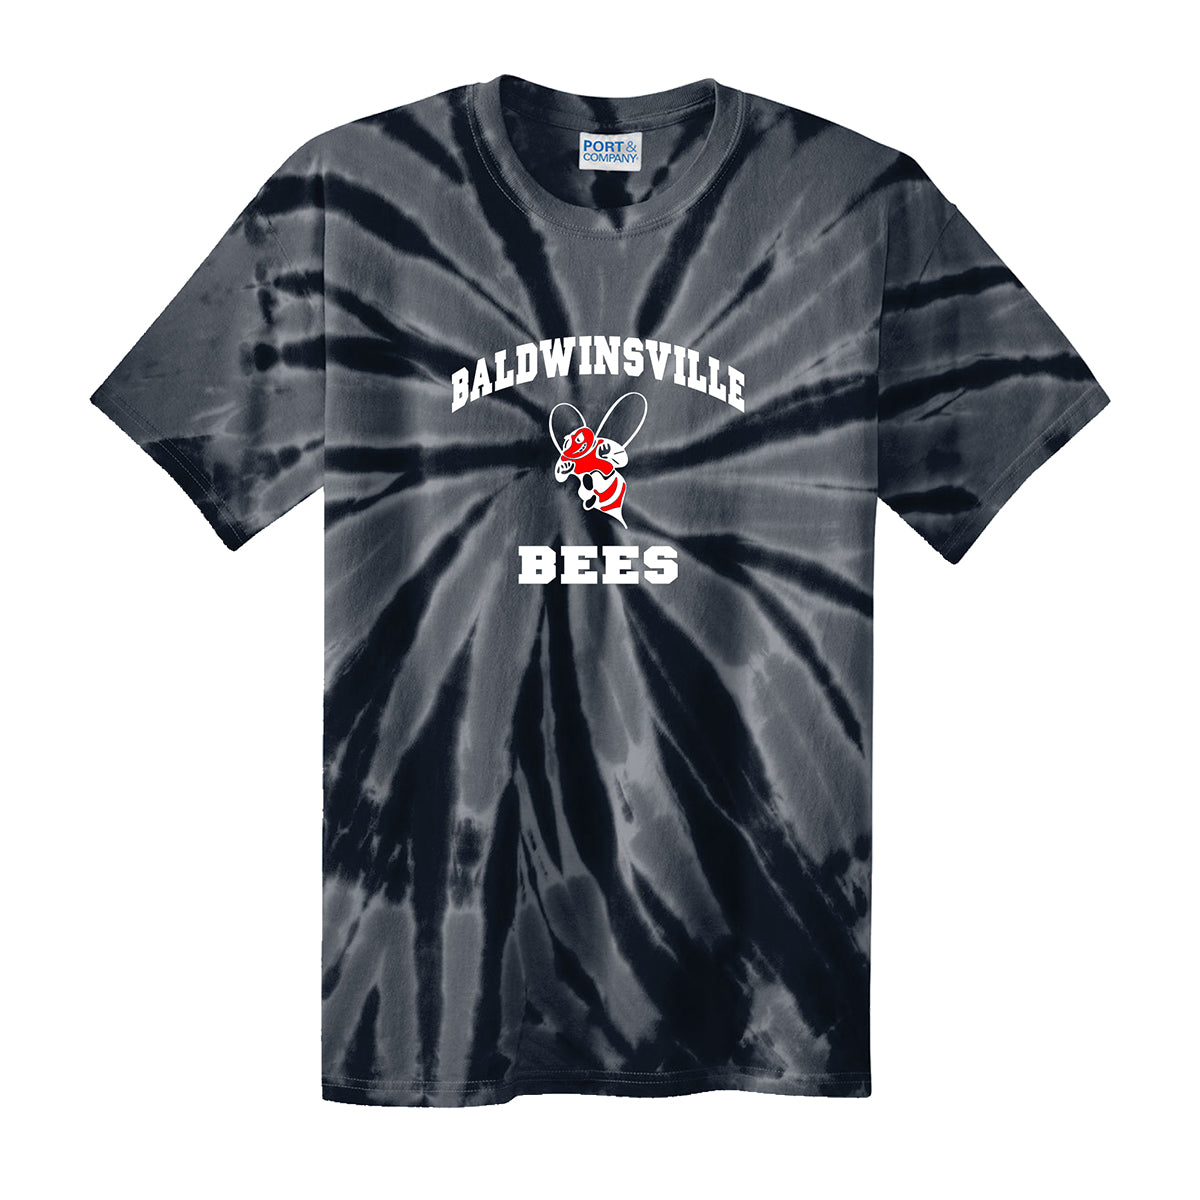 Baldwinsville Bees Tie-Dye T-shirt